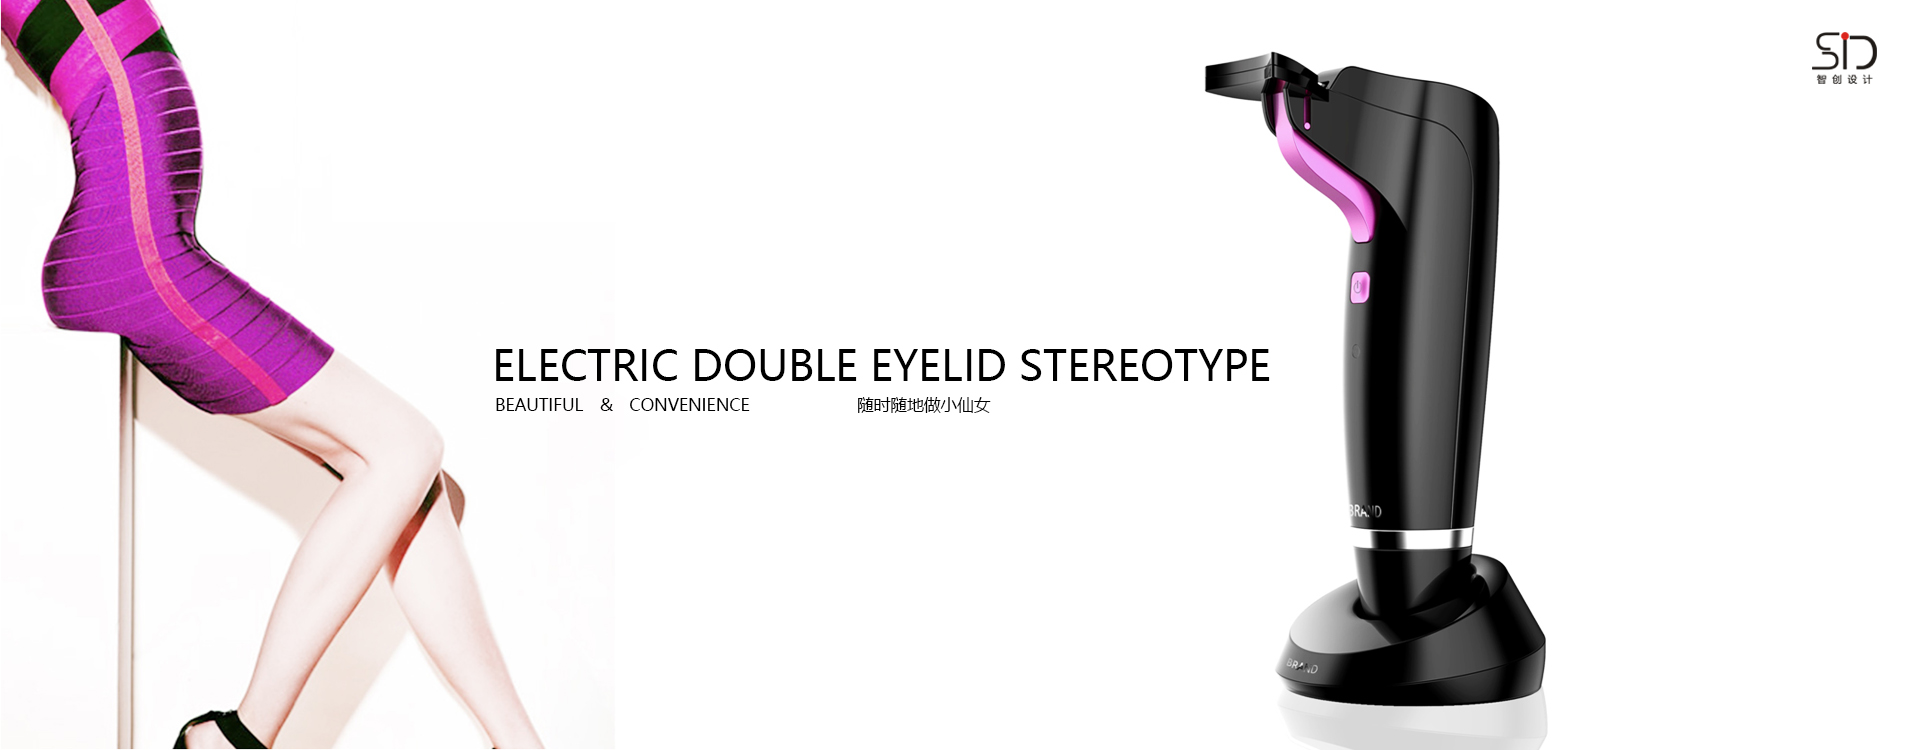 电动双眼皮定型器ID设计/美容仪电子产品设计/家用美容仪外观设计